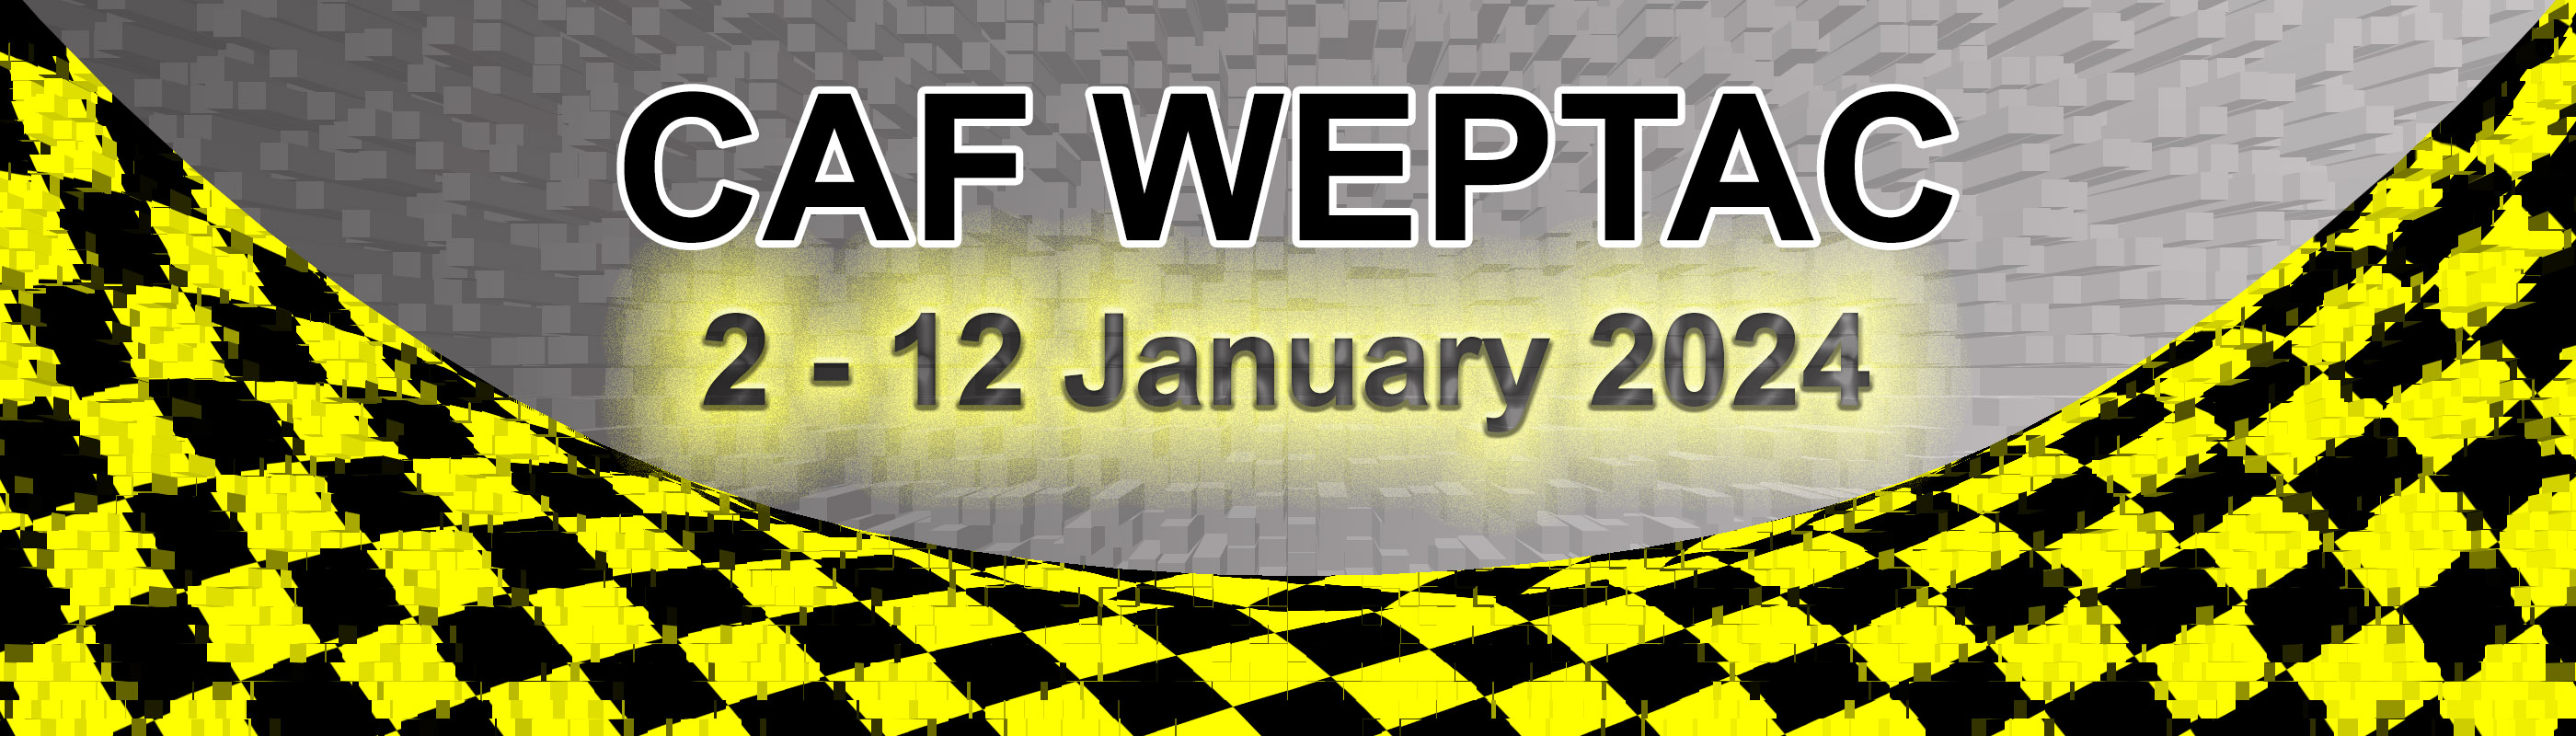 CAF WEPTAC Date Banner